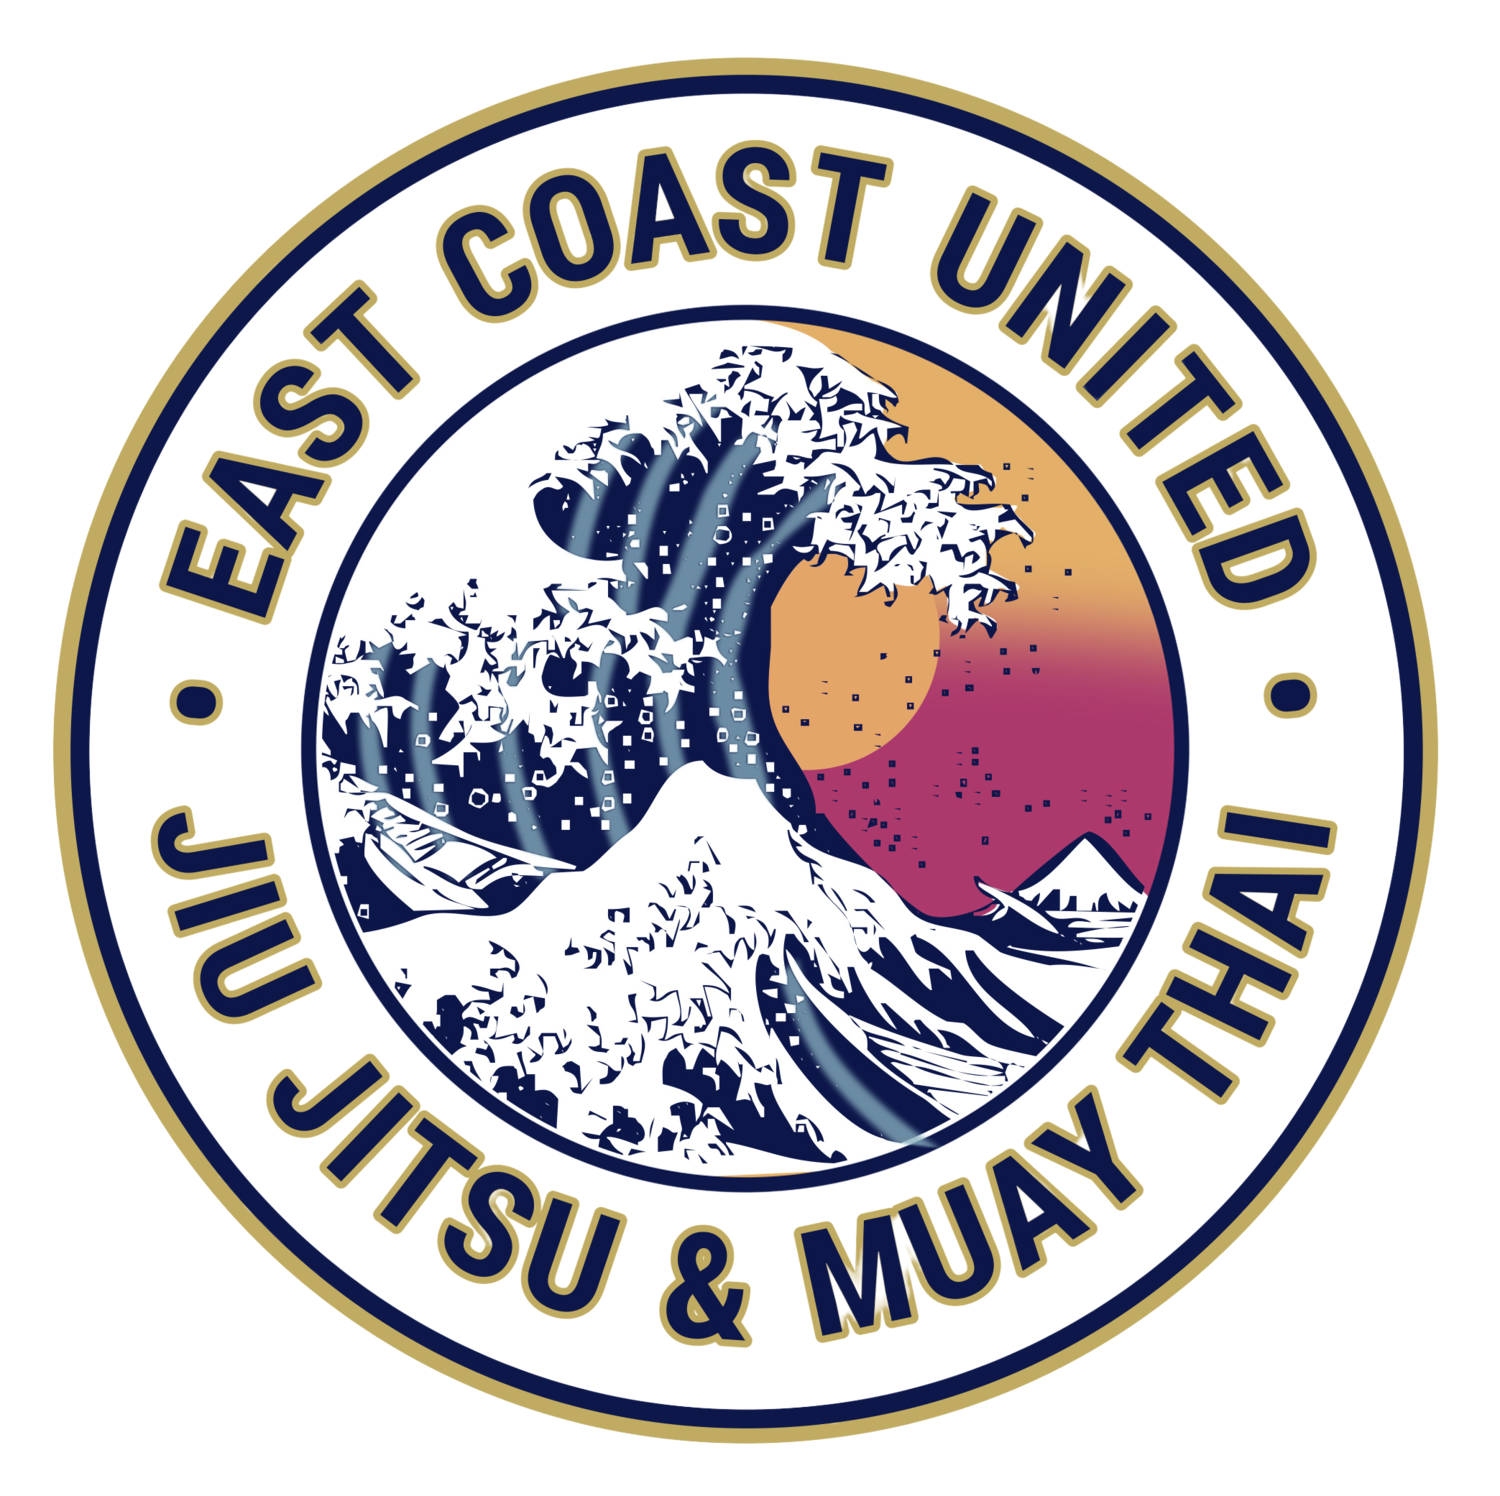 EAST COAST UNITED